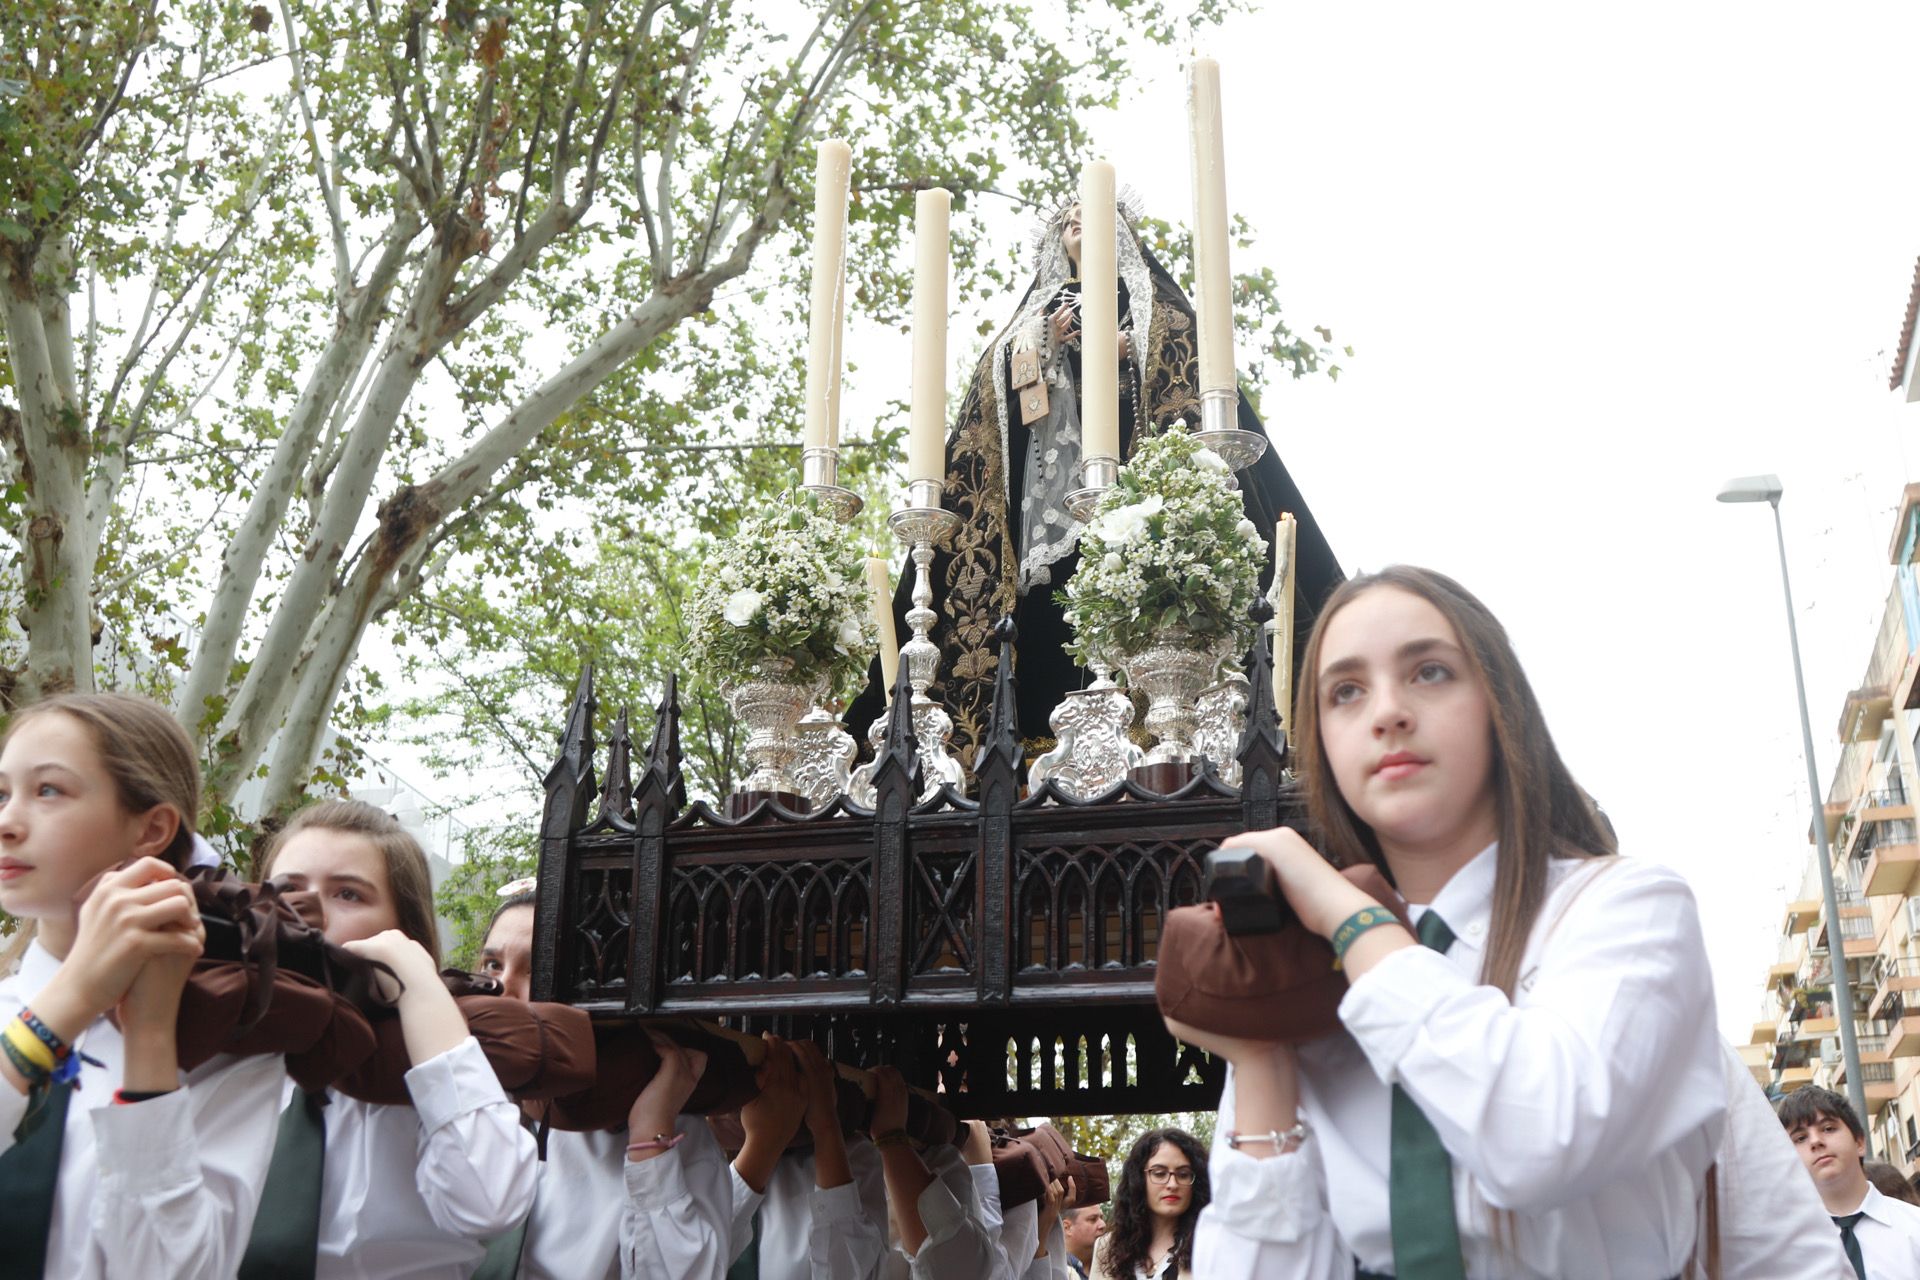 Alumnos del colegio Virgen del Carmen durante su procesión